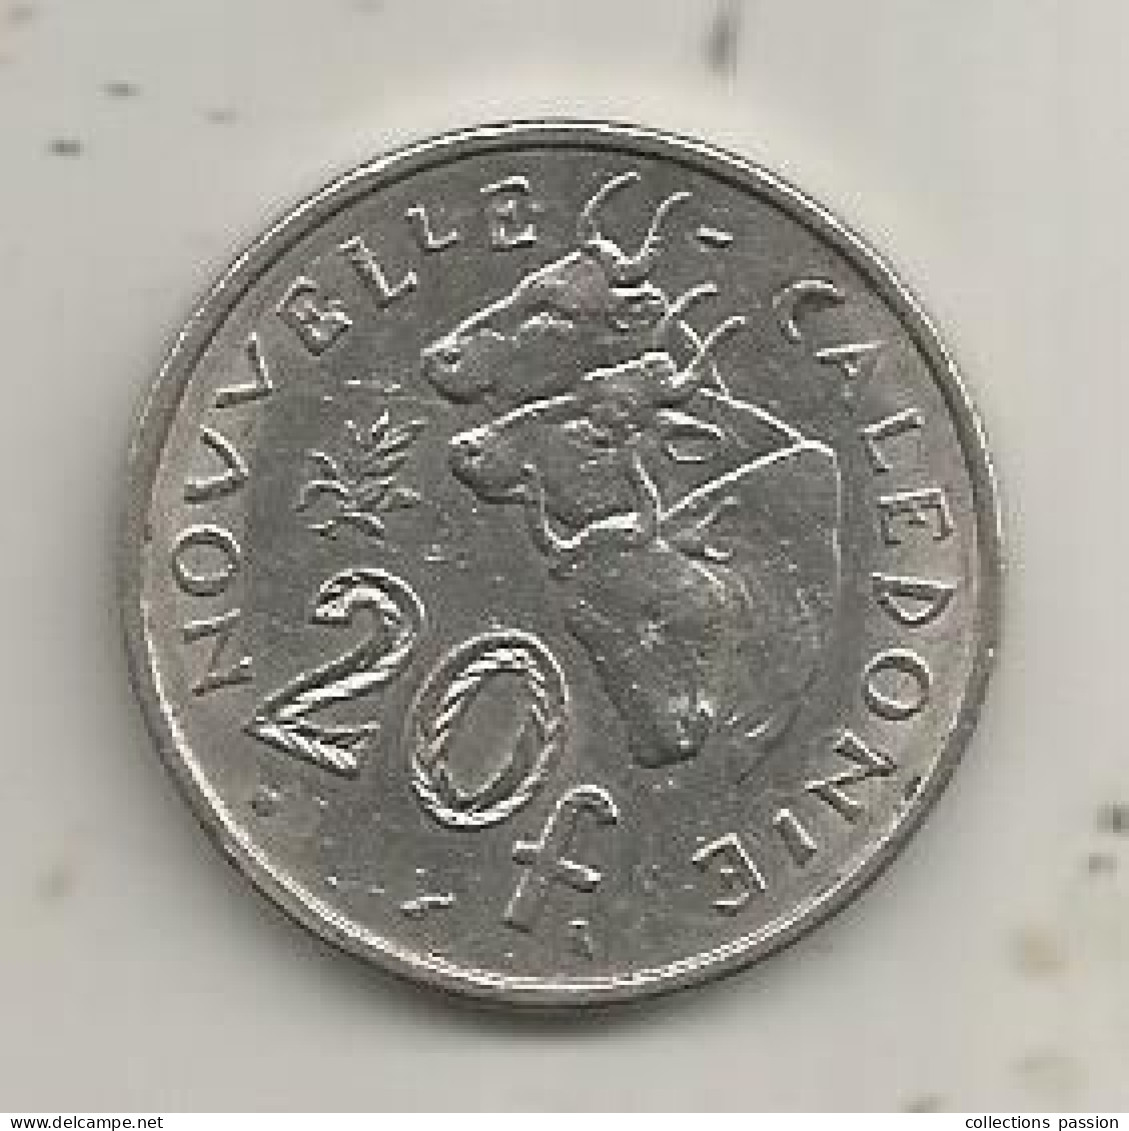 Monnaie, République Française, Nouvelle Calédonie, 1972, 20 Francs, 2 Scans - Nouvelle-Calédonie